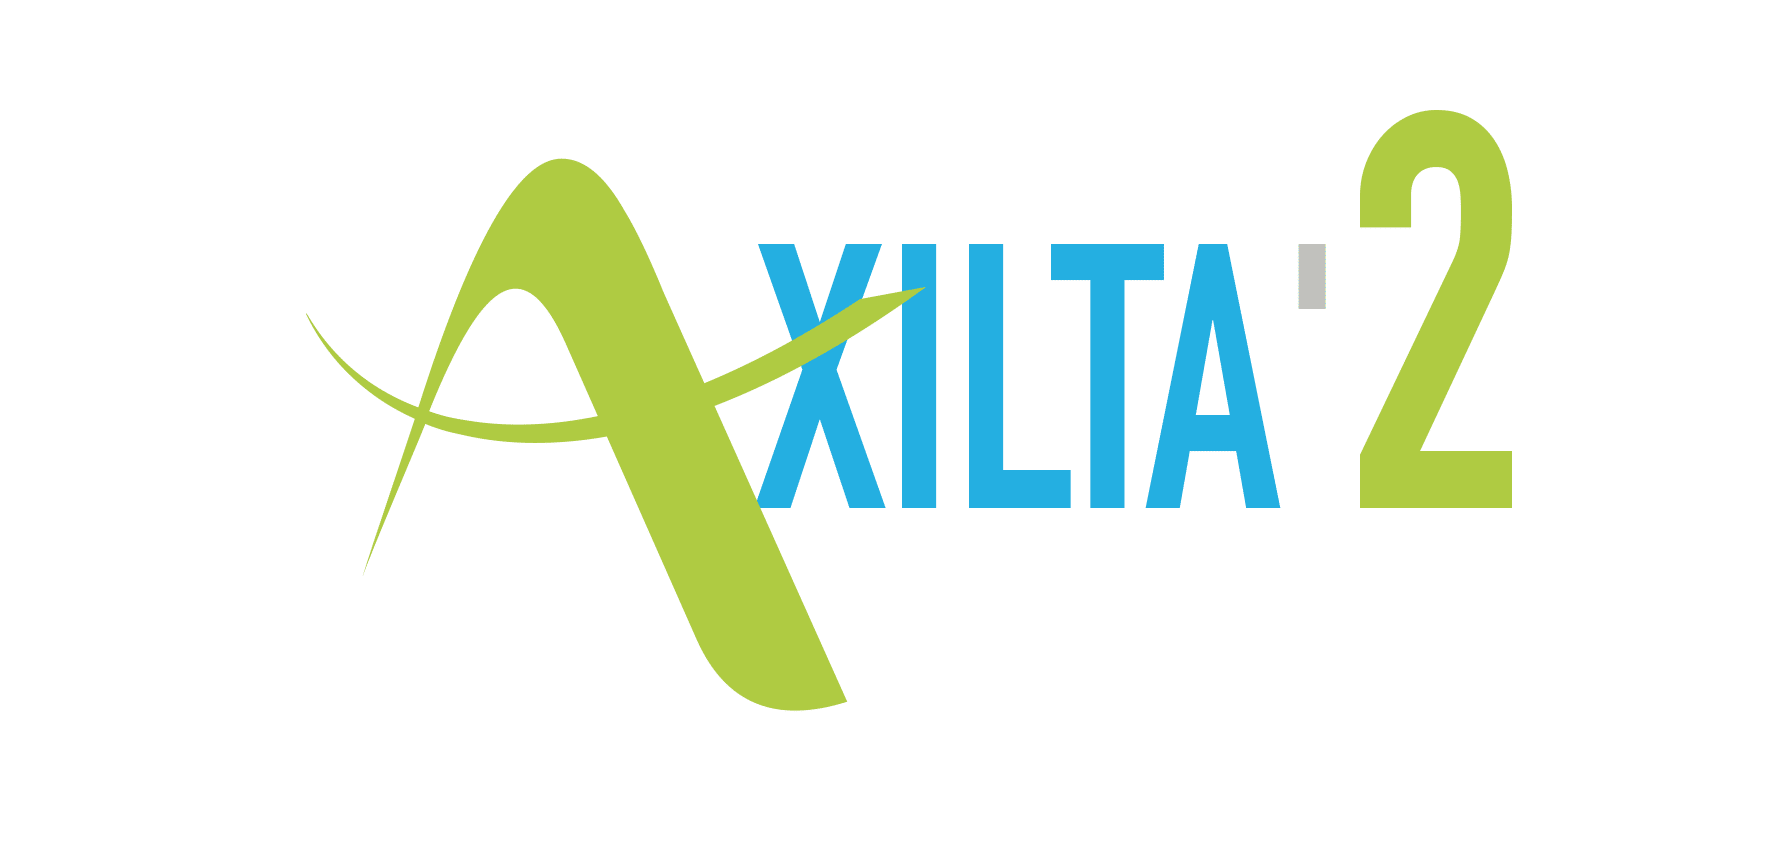 logo logiciel Axilta logiciel de gestion d'affaires pour les professionnels du Bâtiment